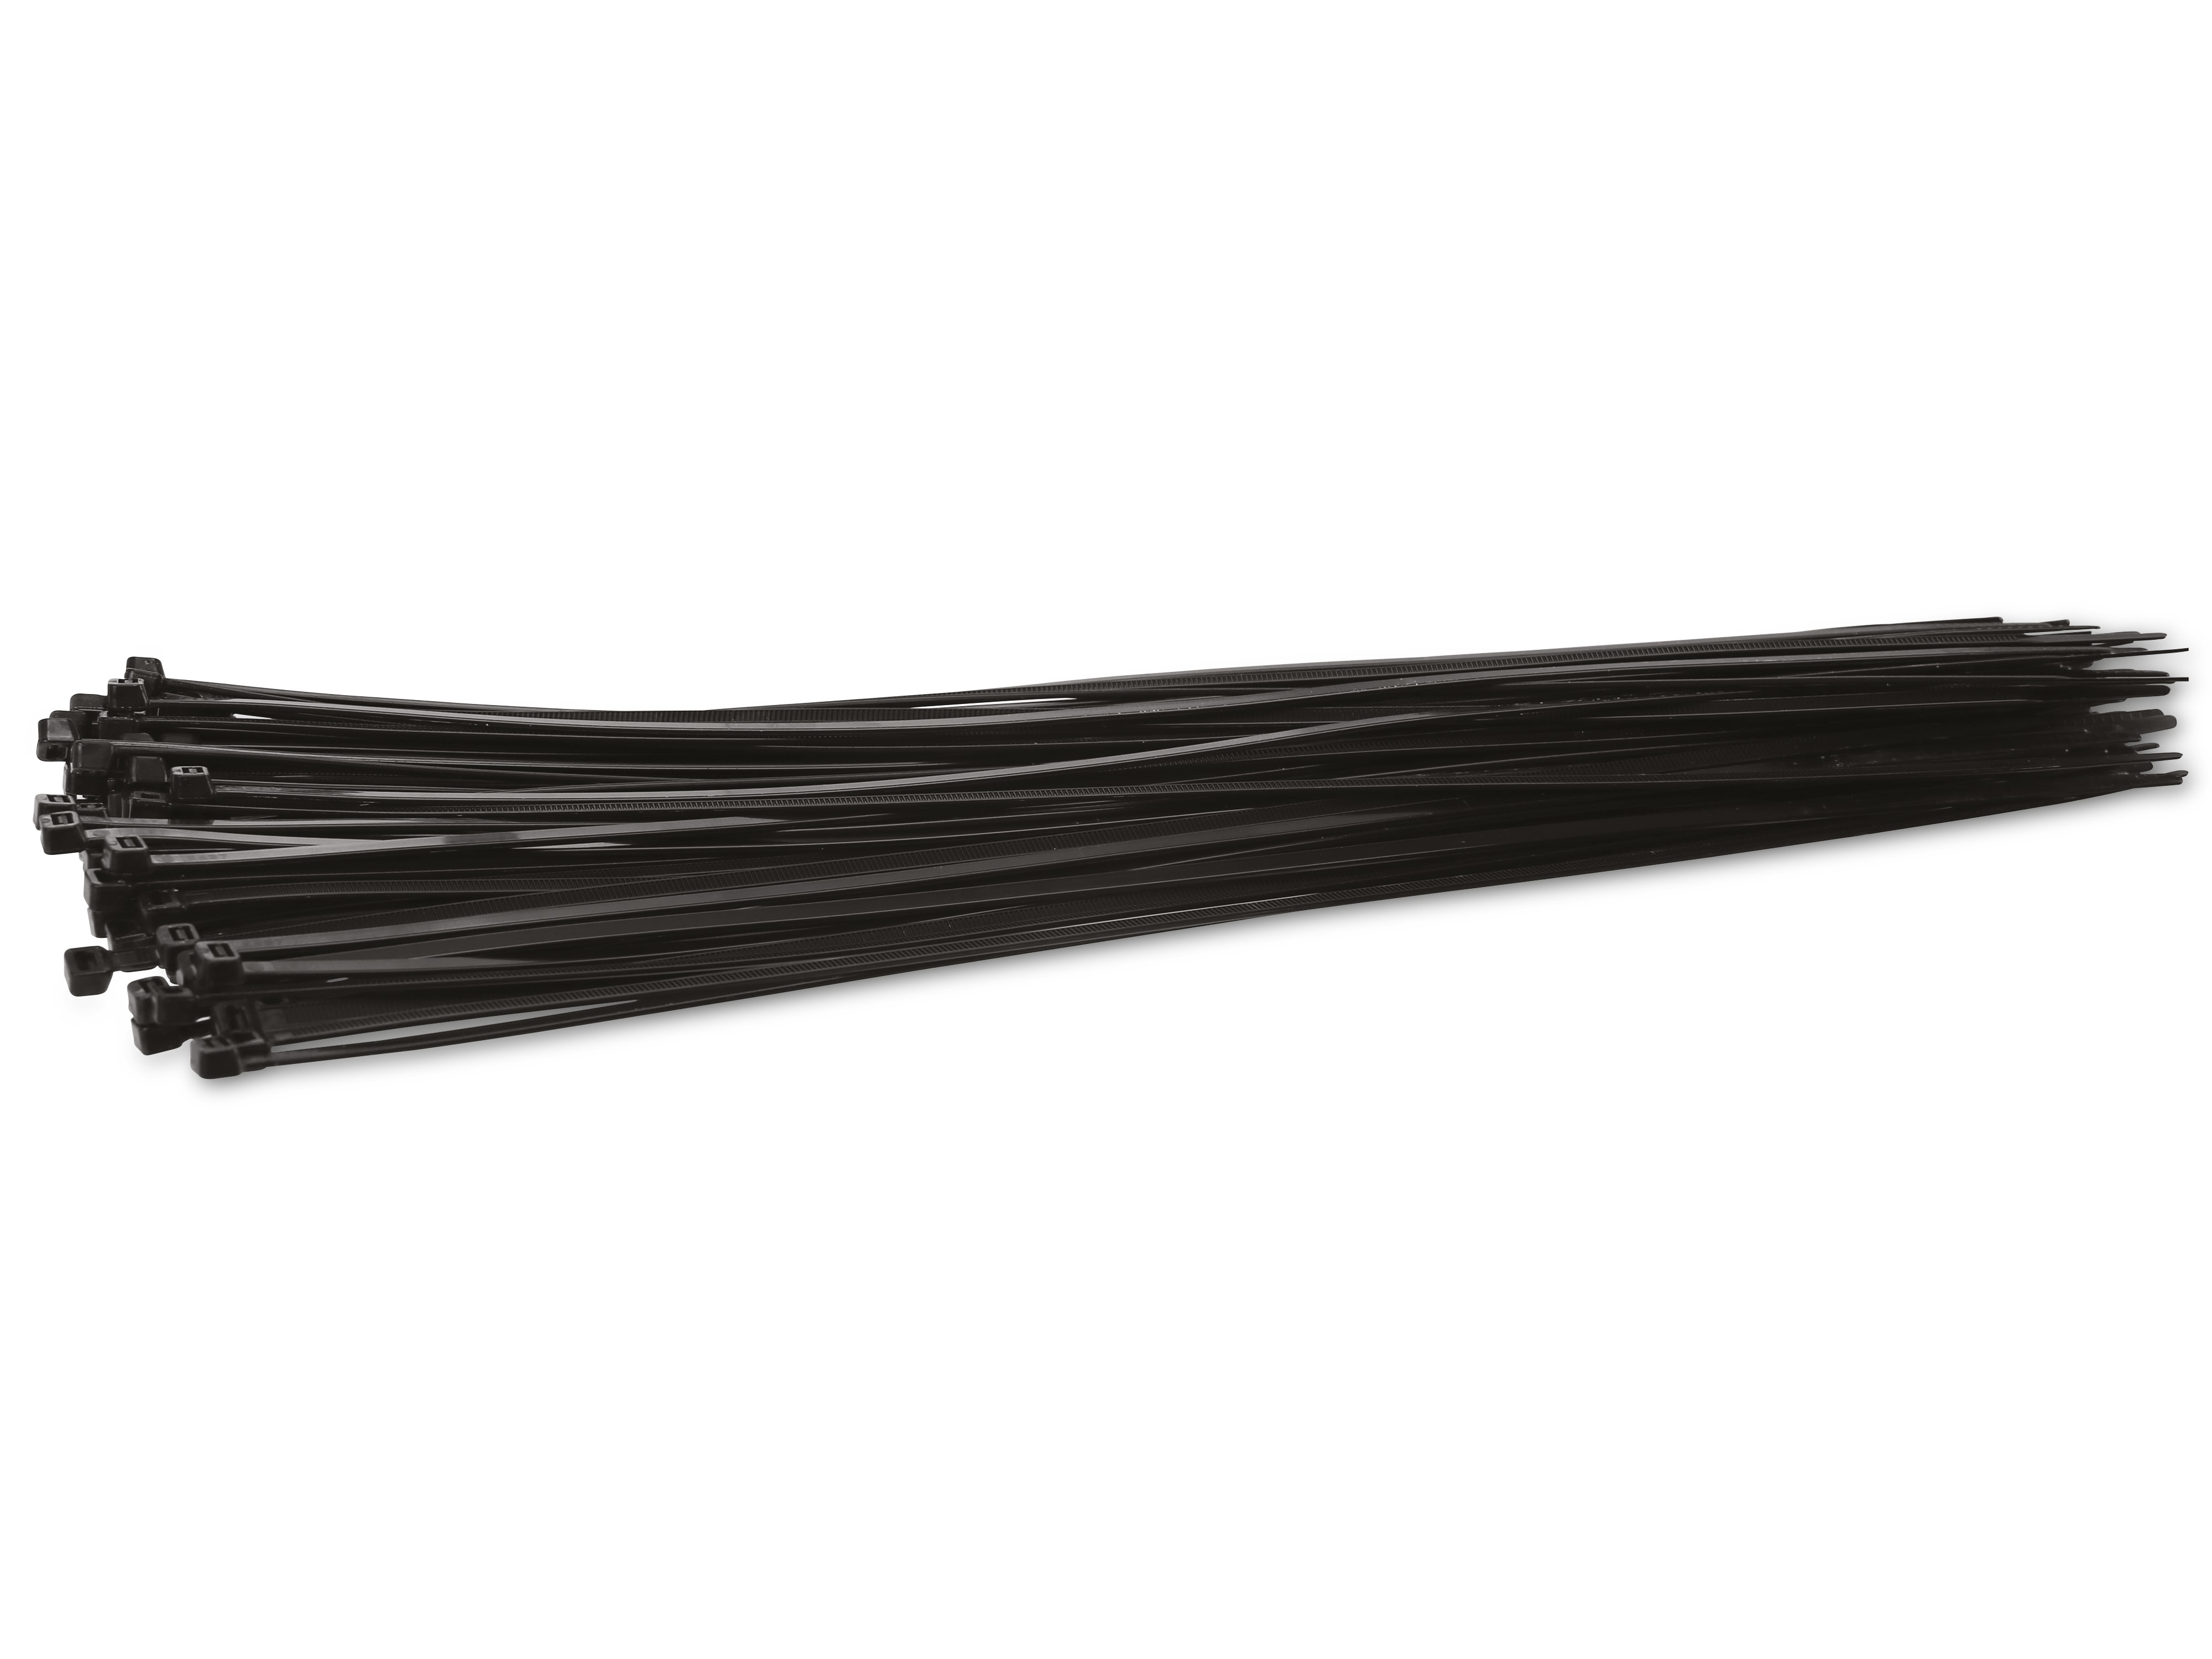 KSS Kabelbinder-Sortiment Polyamid 6.6, schwarz, 385x4,8, UV-beständig, 100 Stück